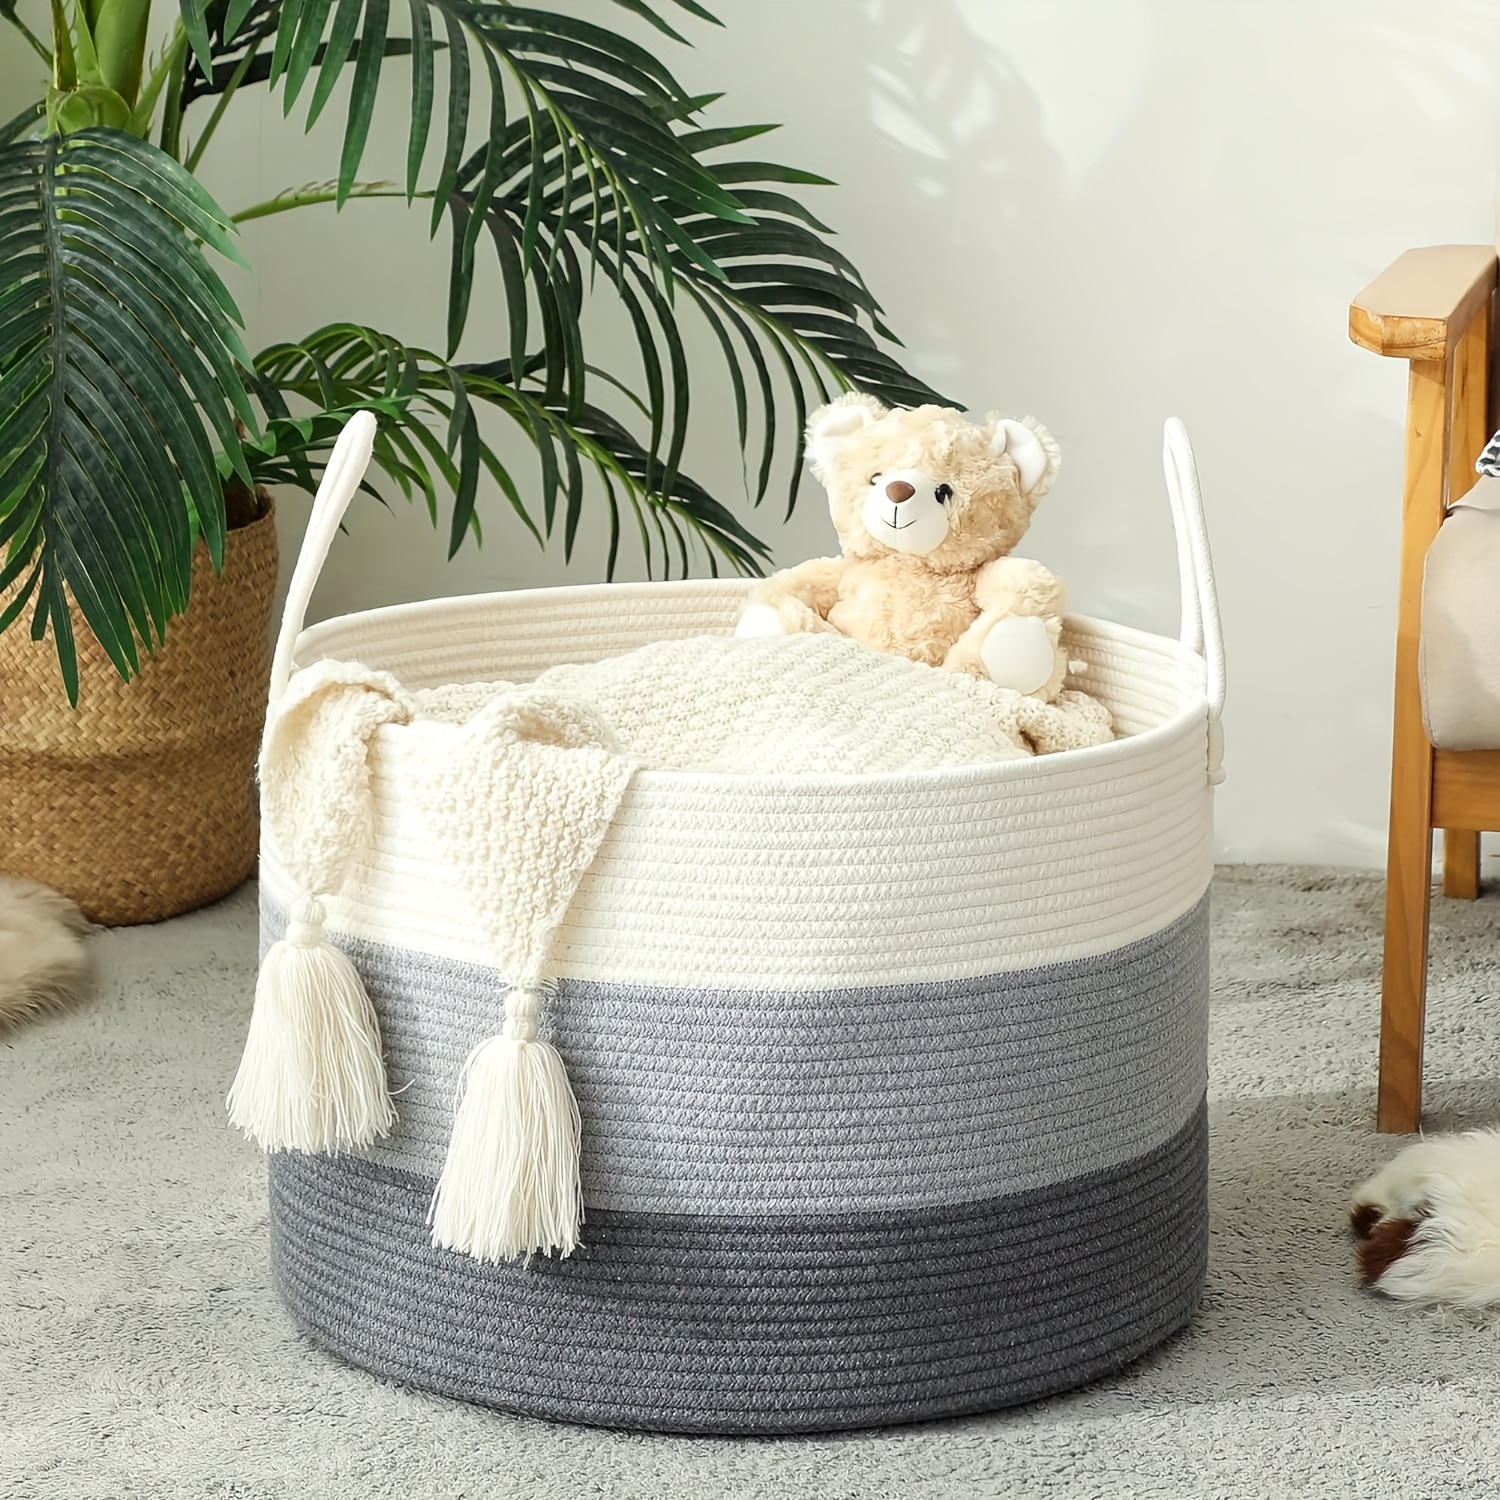 Cesta de manta lavable XXXXL para sala de estar, 2 unidades, cestas de  juguetes de cuerda tejida para niños, cesta extra grande para mantas